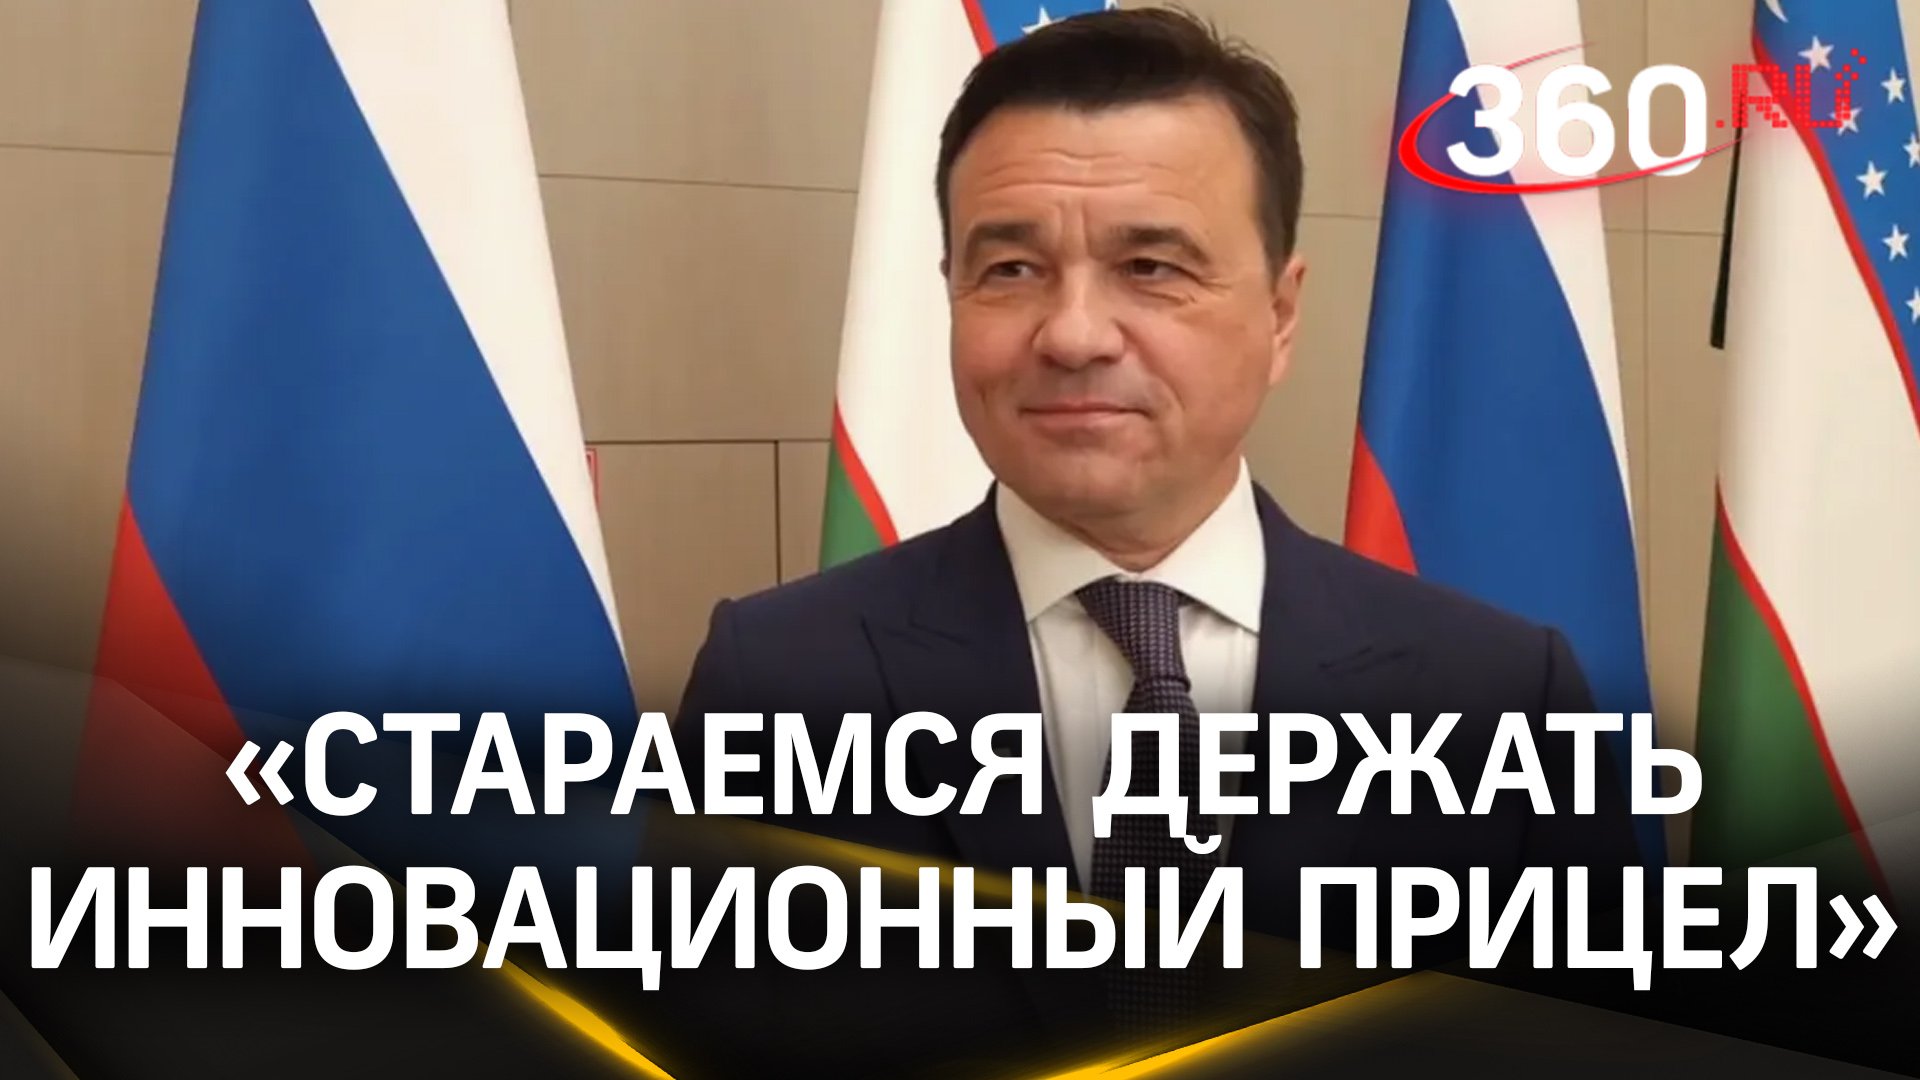 Соглашение  о сотрудничестве в ключевых сферах подписали Подмосковье и Андижанская область Узбекиста